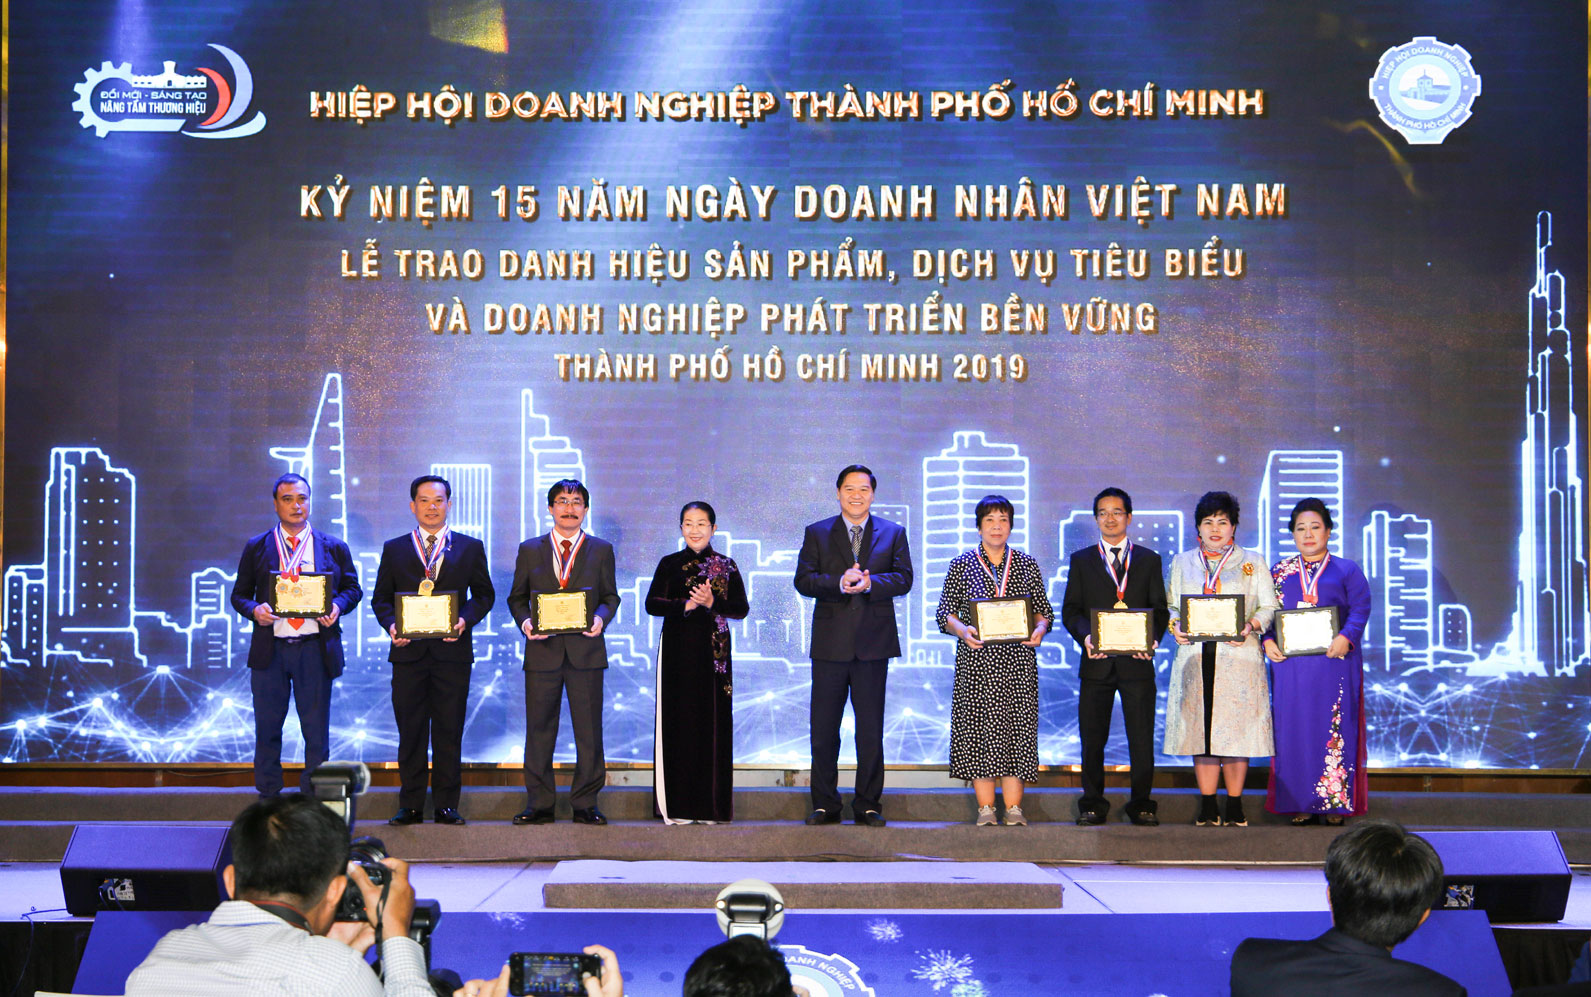 Phó Bí thư Thành ủy TPHCM Bà Võ Thị Dung chúc mừng các doanh nghiệp phát triển bền vững trên 50 năm